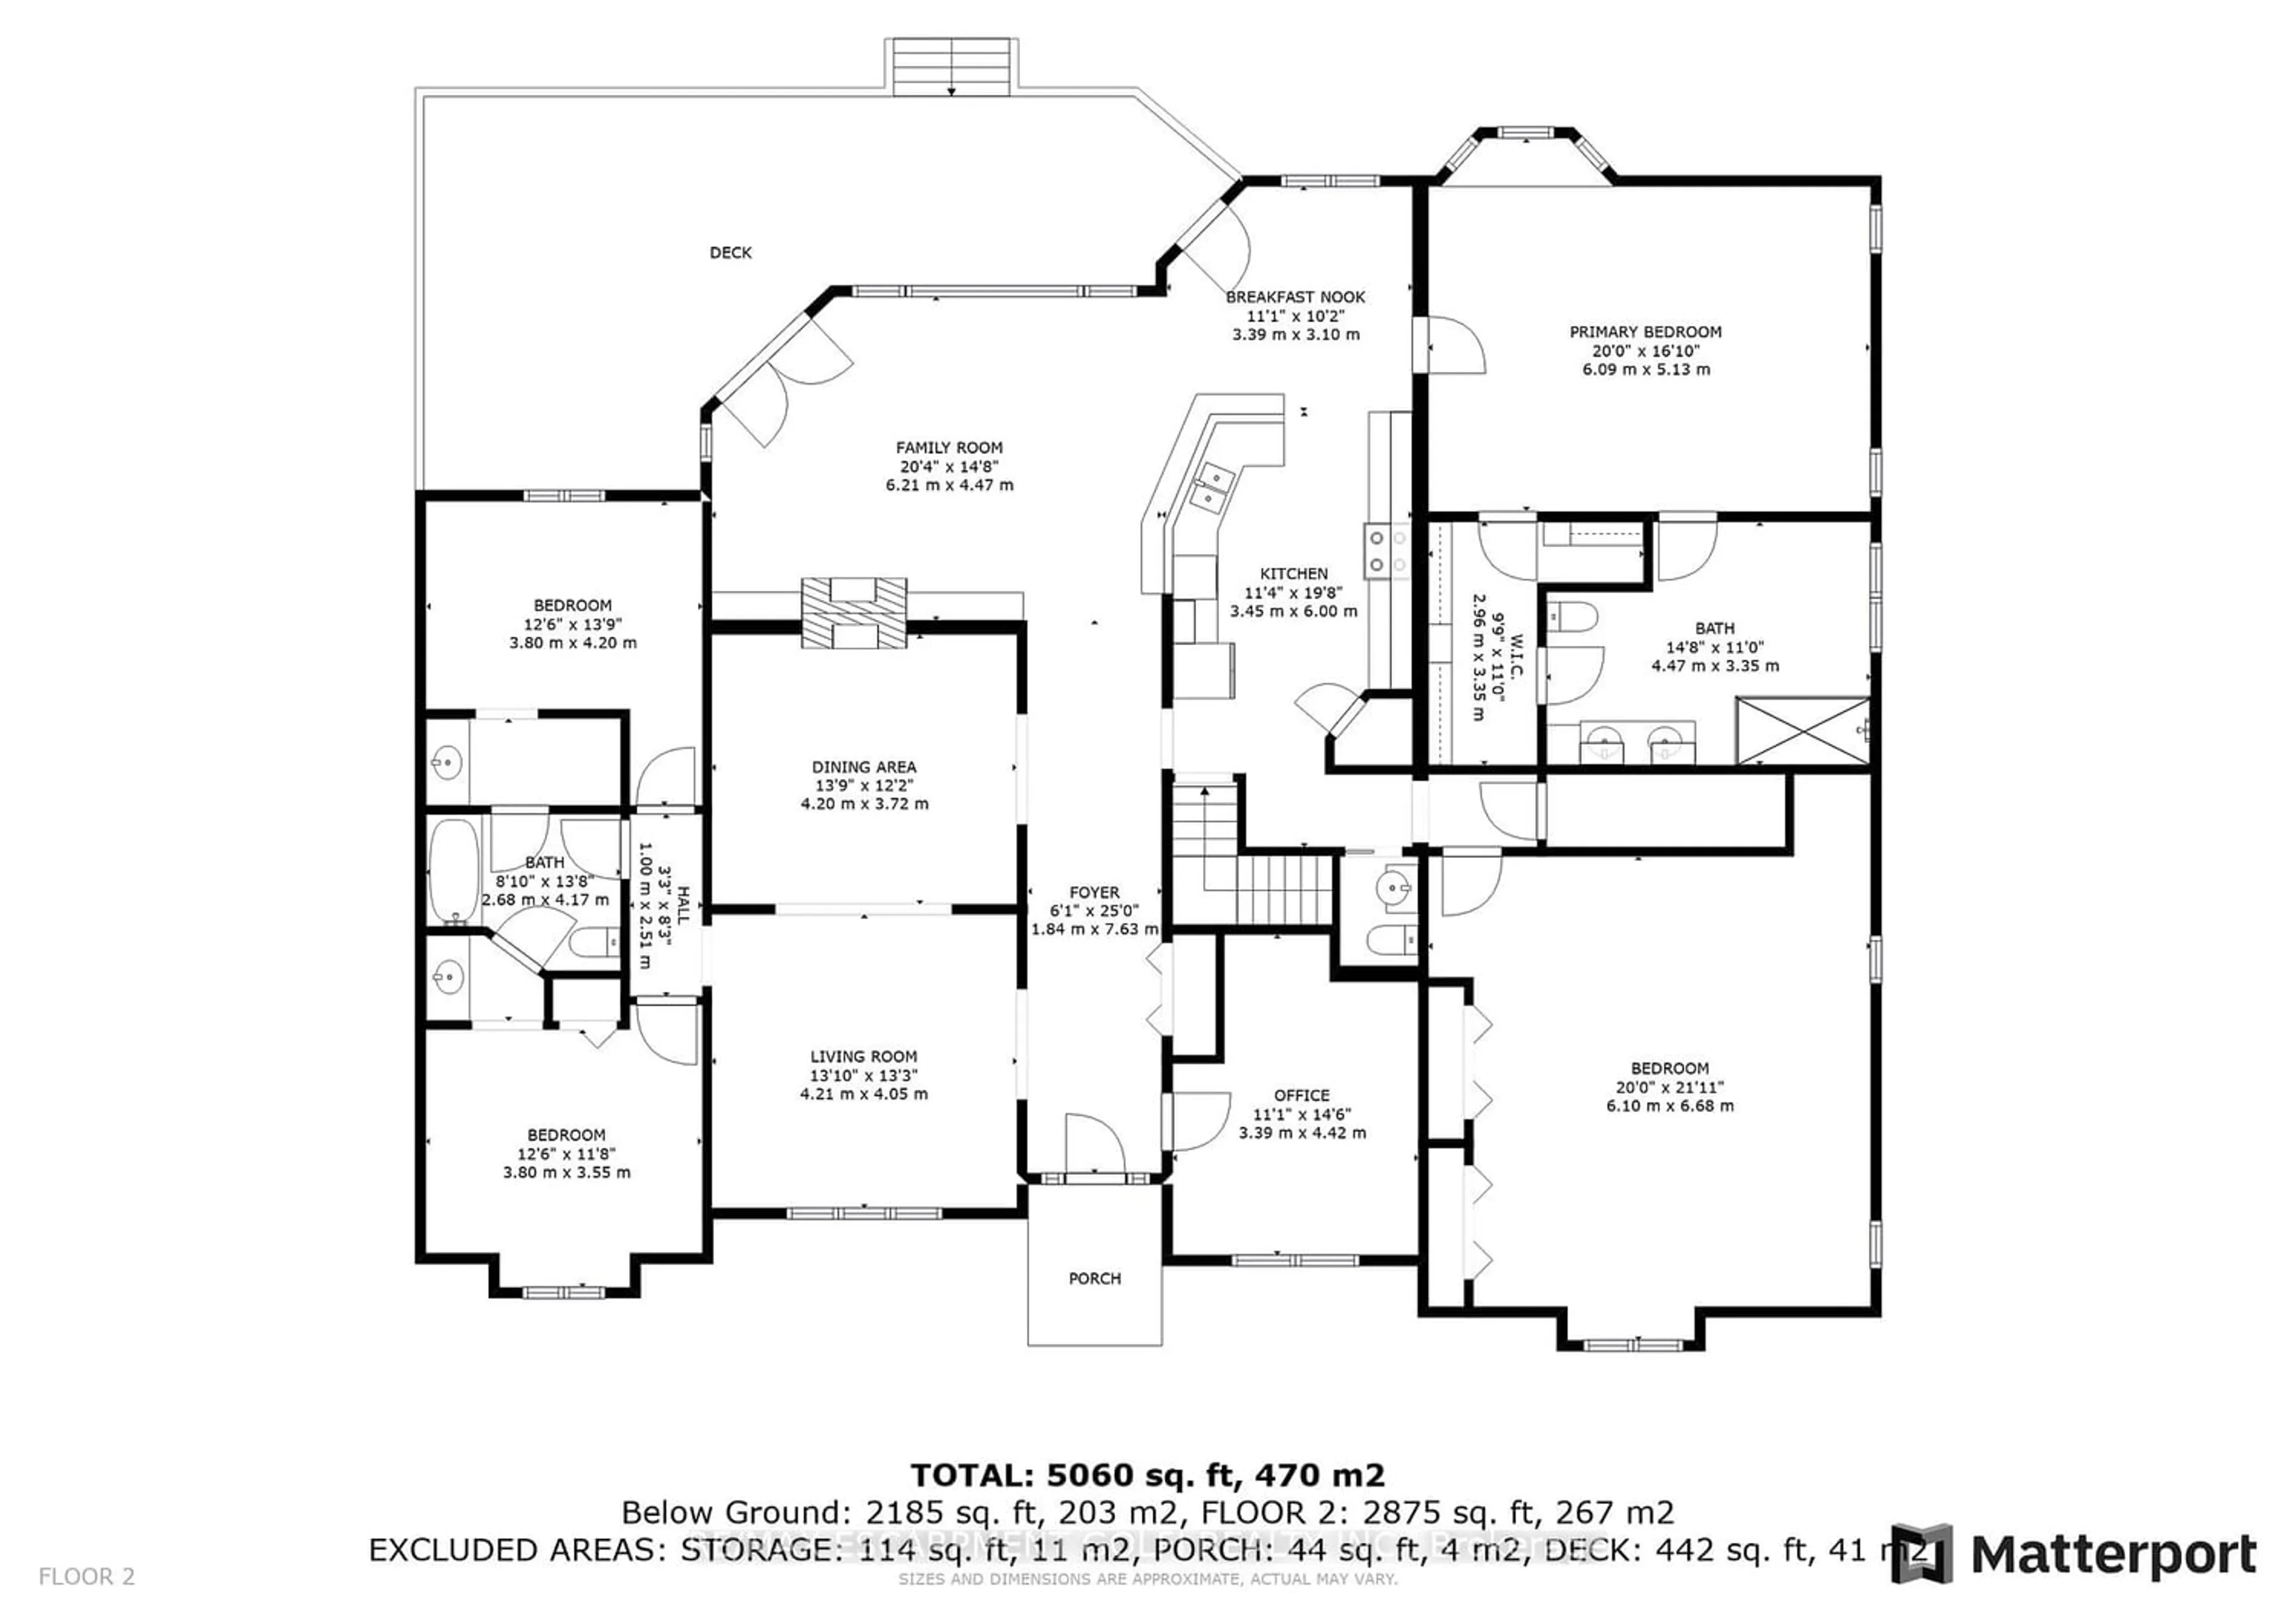 Floor plan for 586 Canboro Rd, Pelham Ontario L0S 1C0